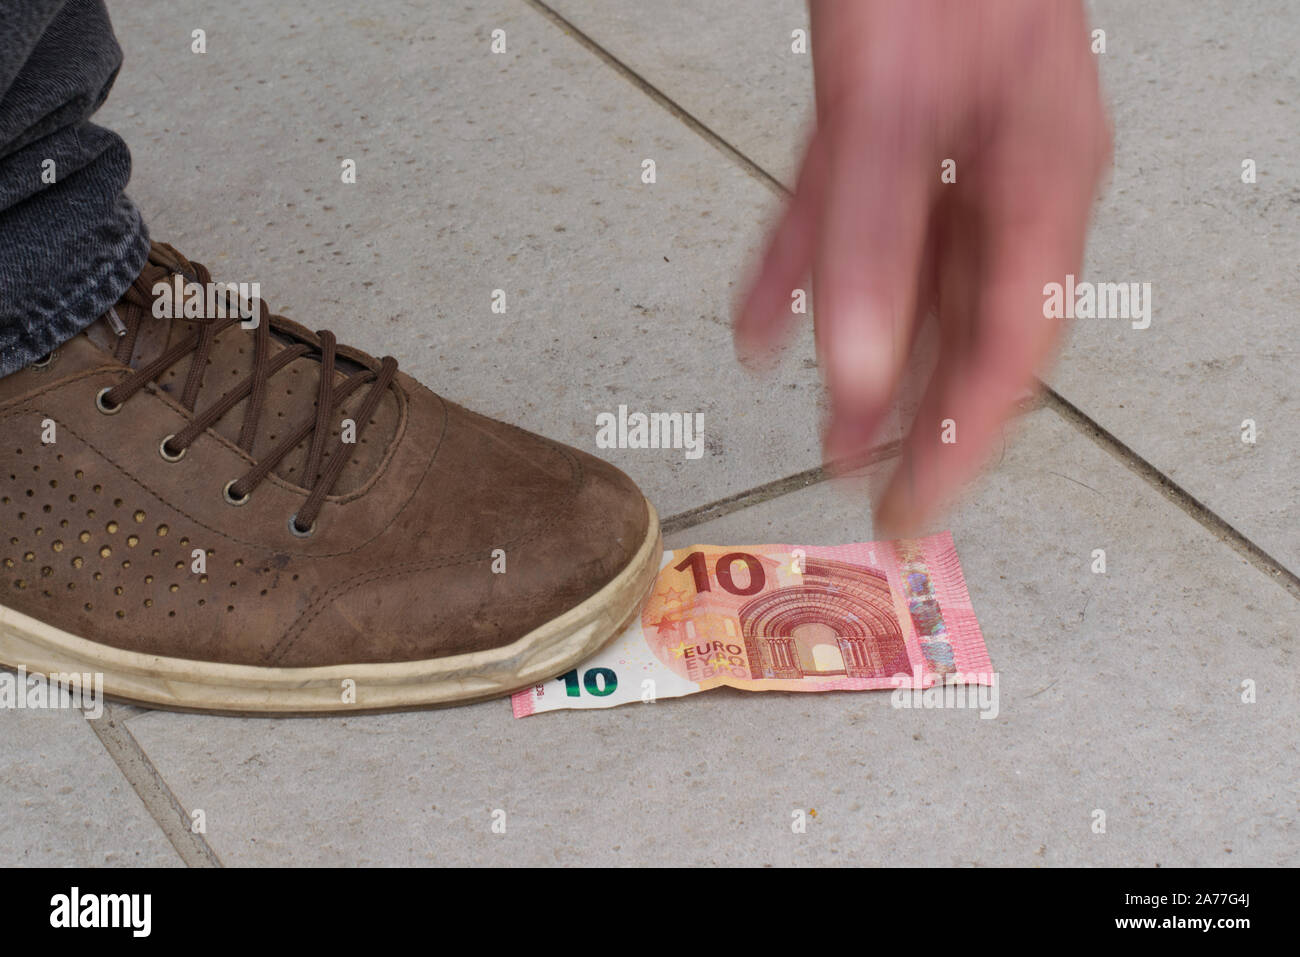 Qualcuno ha trovato 10 euro sulla strada, fissandolo con il suo piede, il tentativo di afferrare la banconota. La mano è fuori fuoco per il movimento e la dinamica. Foto Stock